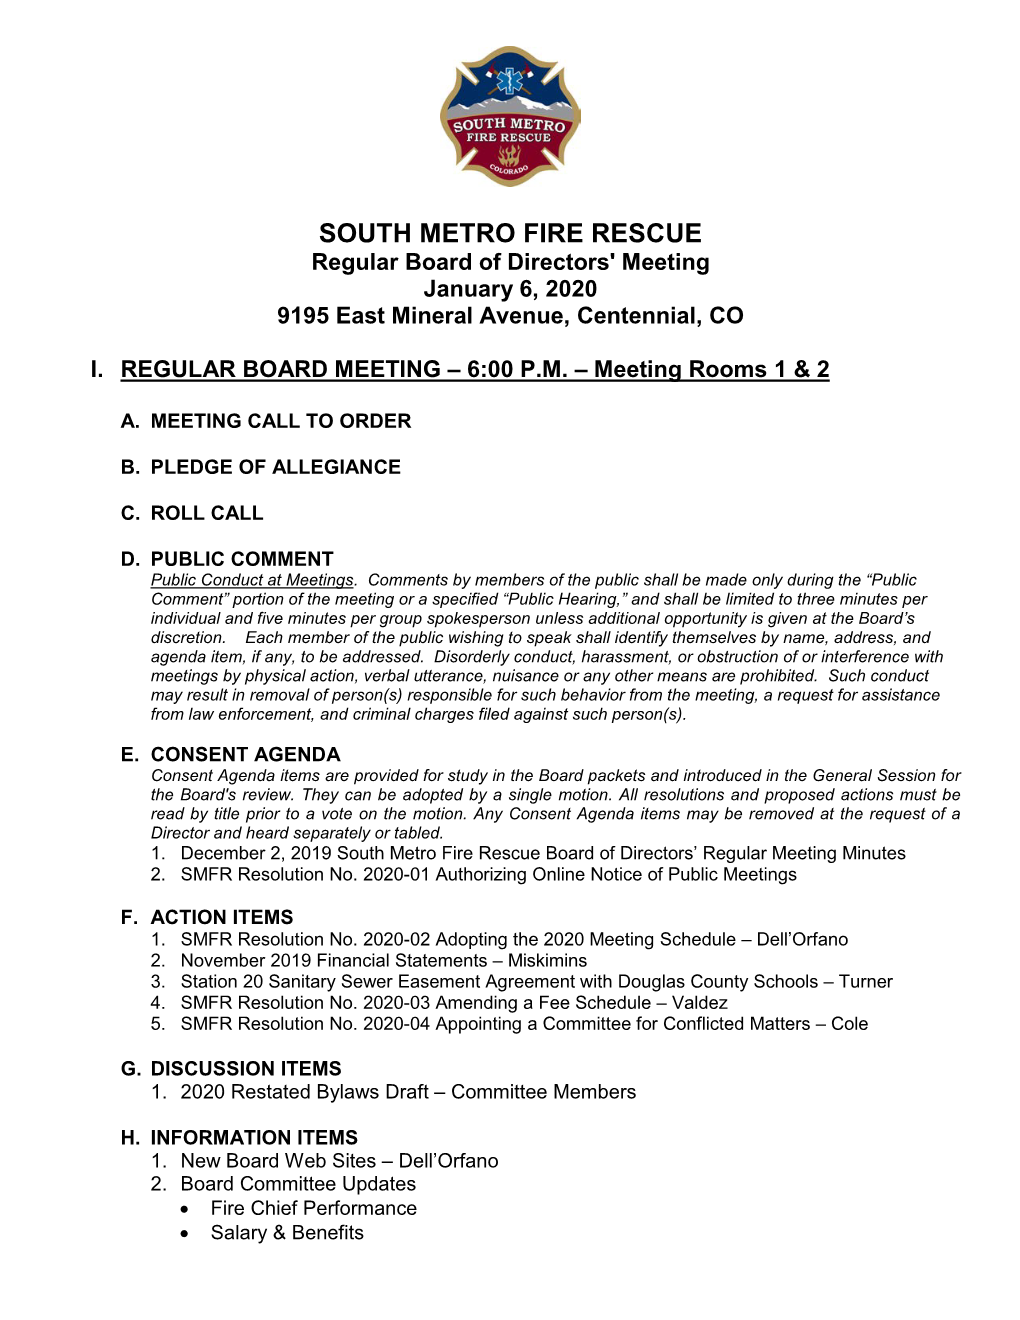 South Metro Fire Rescue Board Agenda